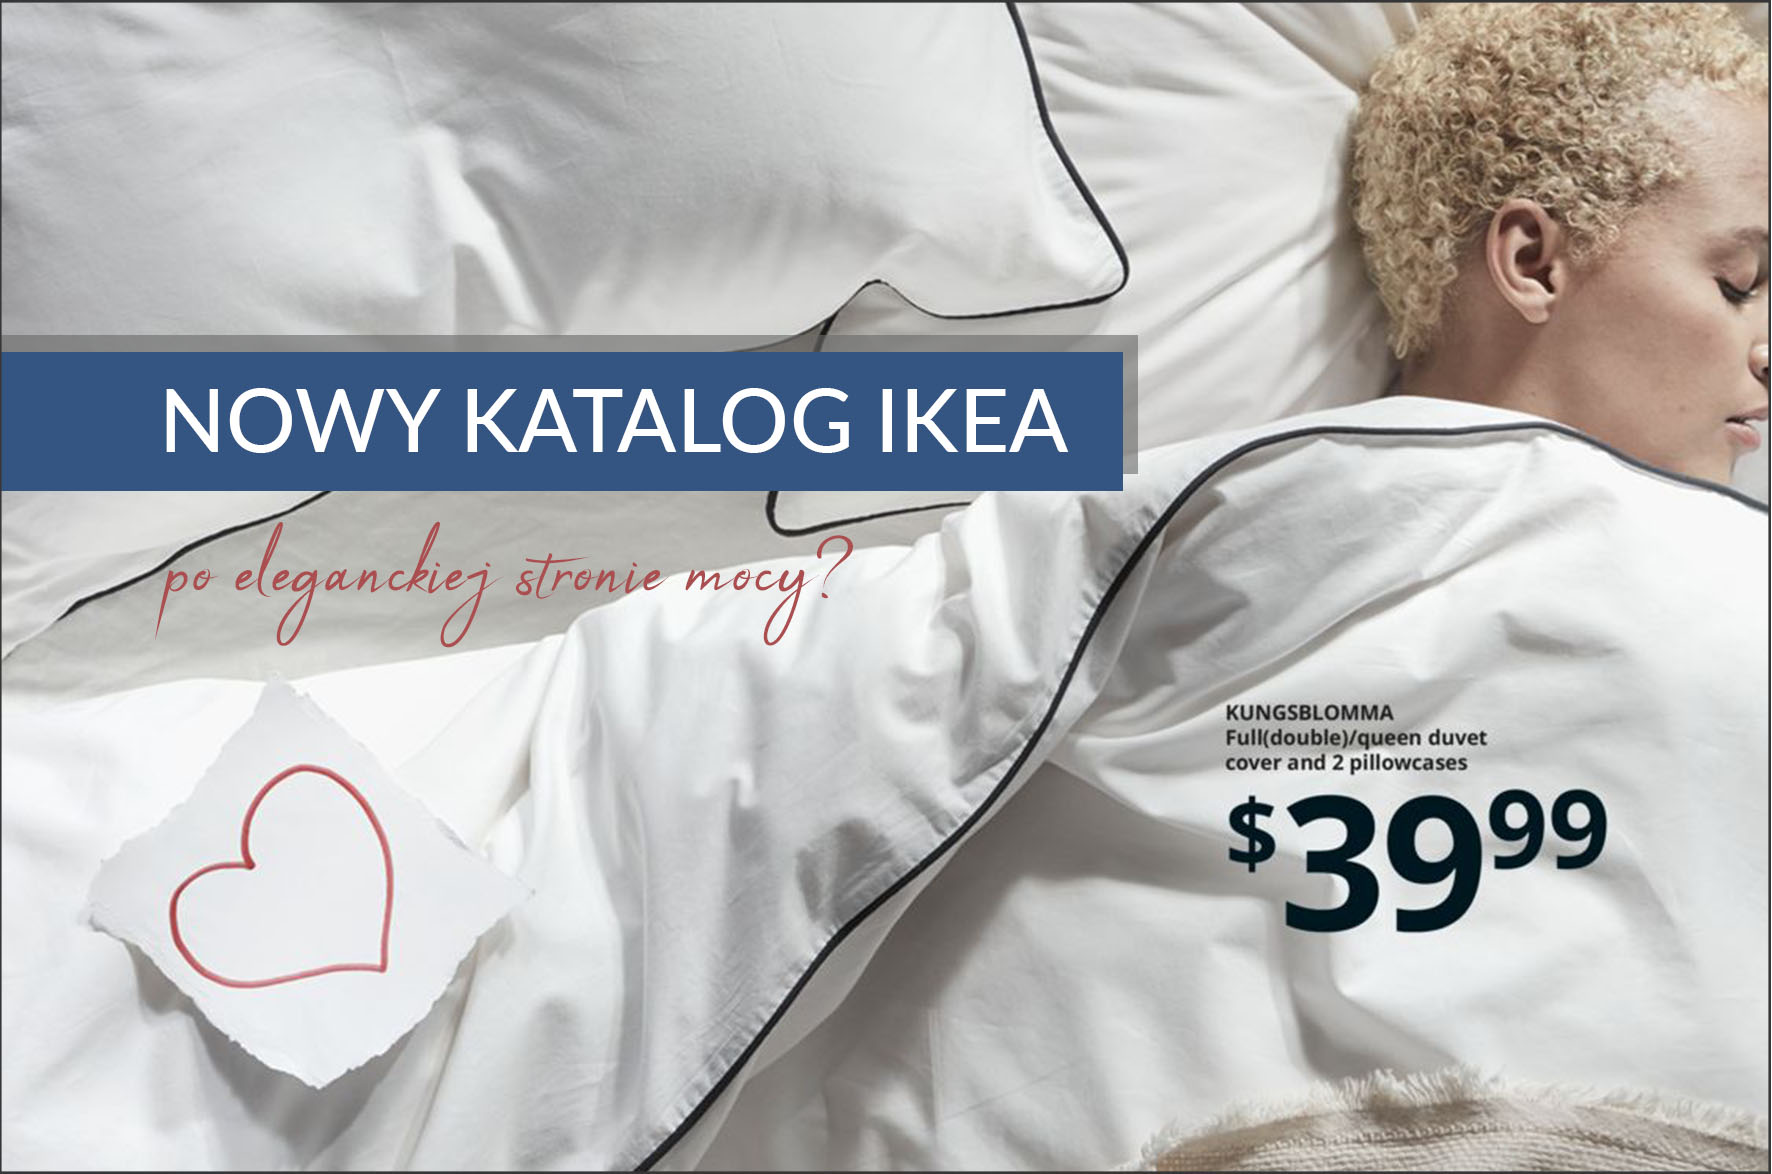 Katalog IKEA 2020 - po eleganckiej stronie mocy?